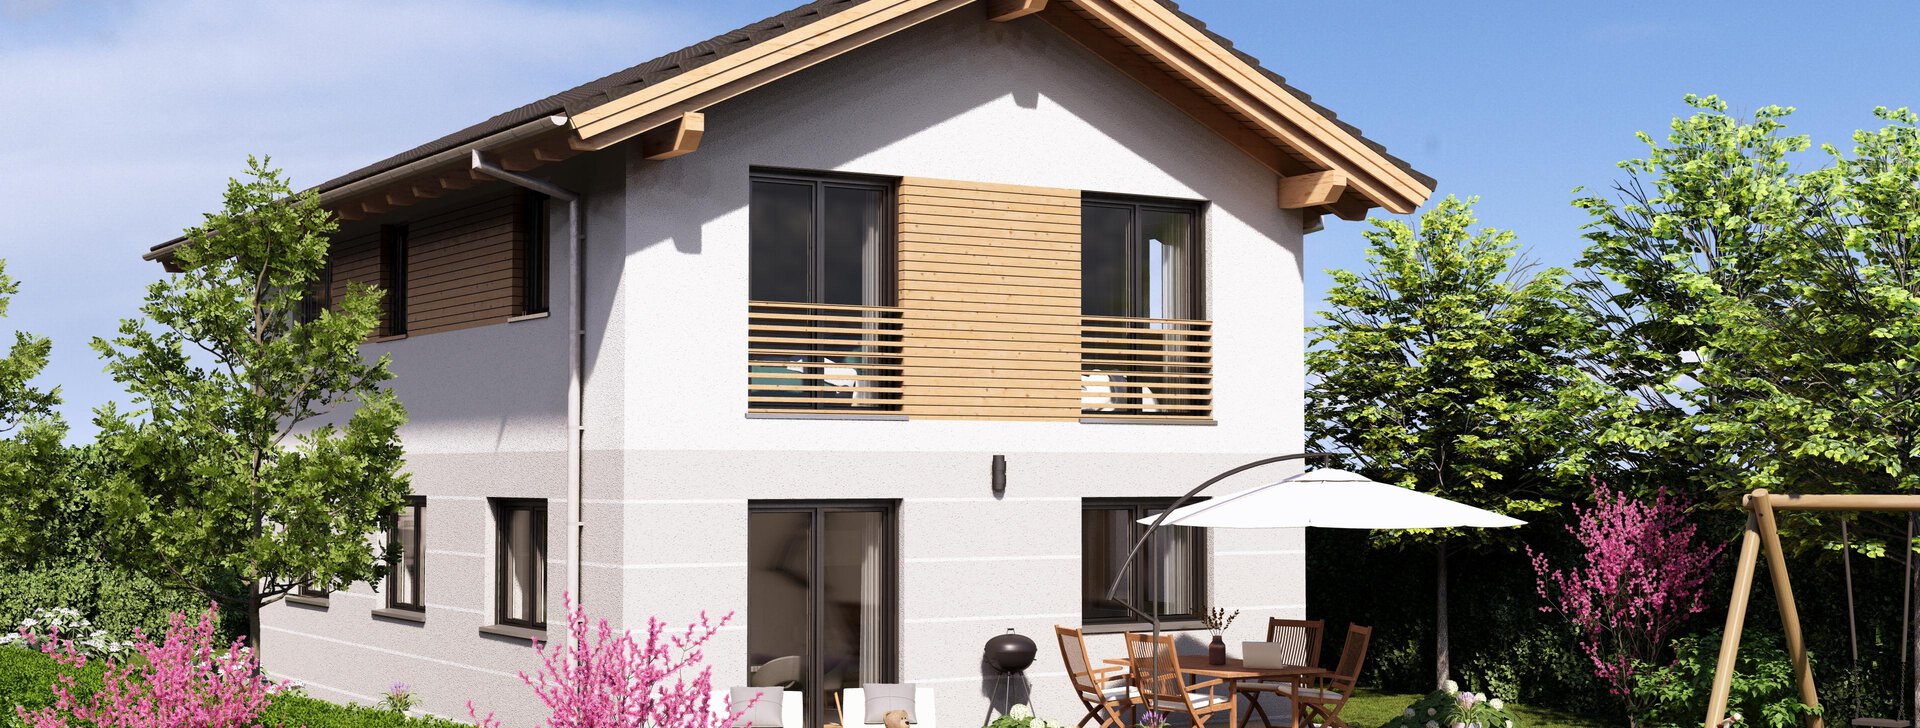 Neubau Einfamilienhaus in Trostberg - schlüsselfertig und energieeffizient